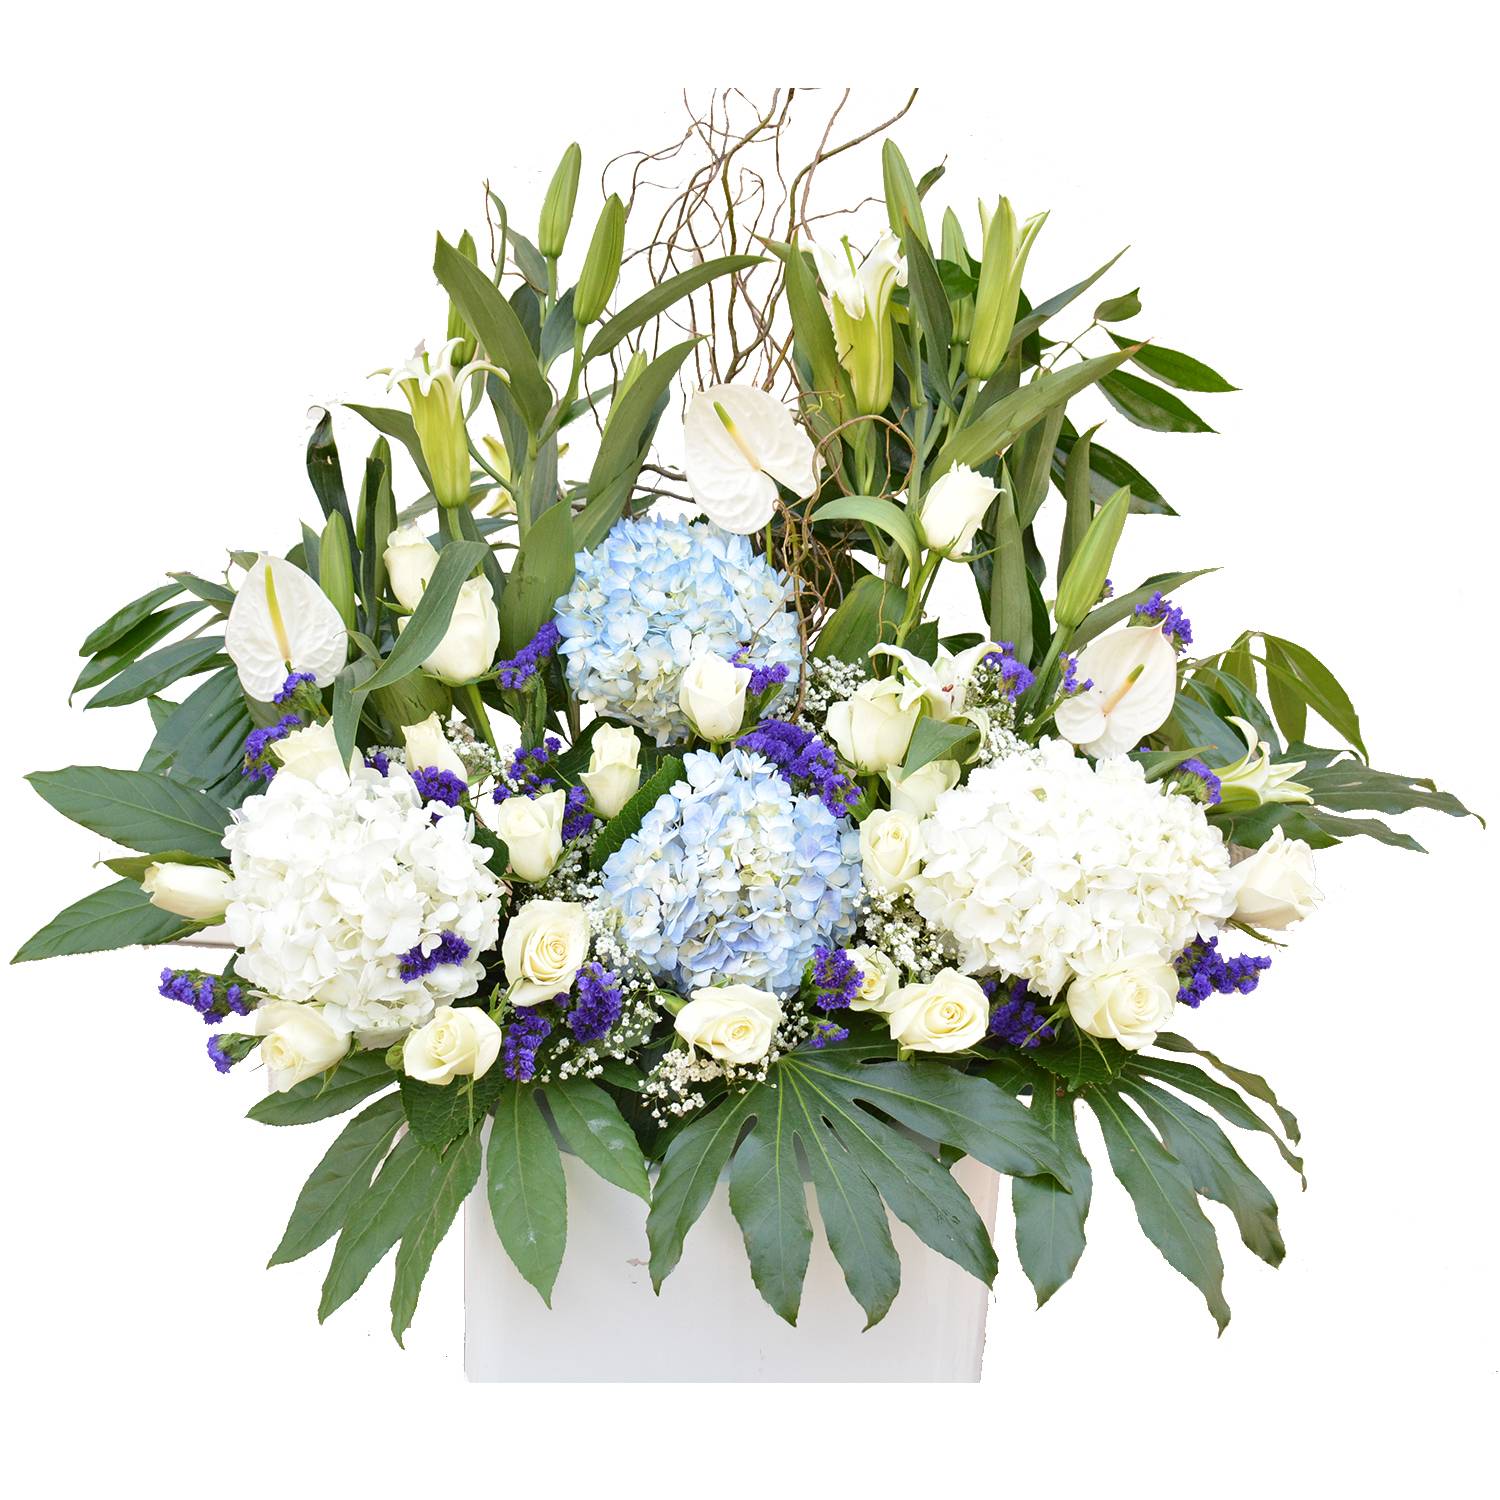 Table Flowers Arrangements